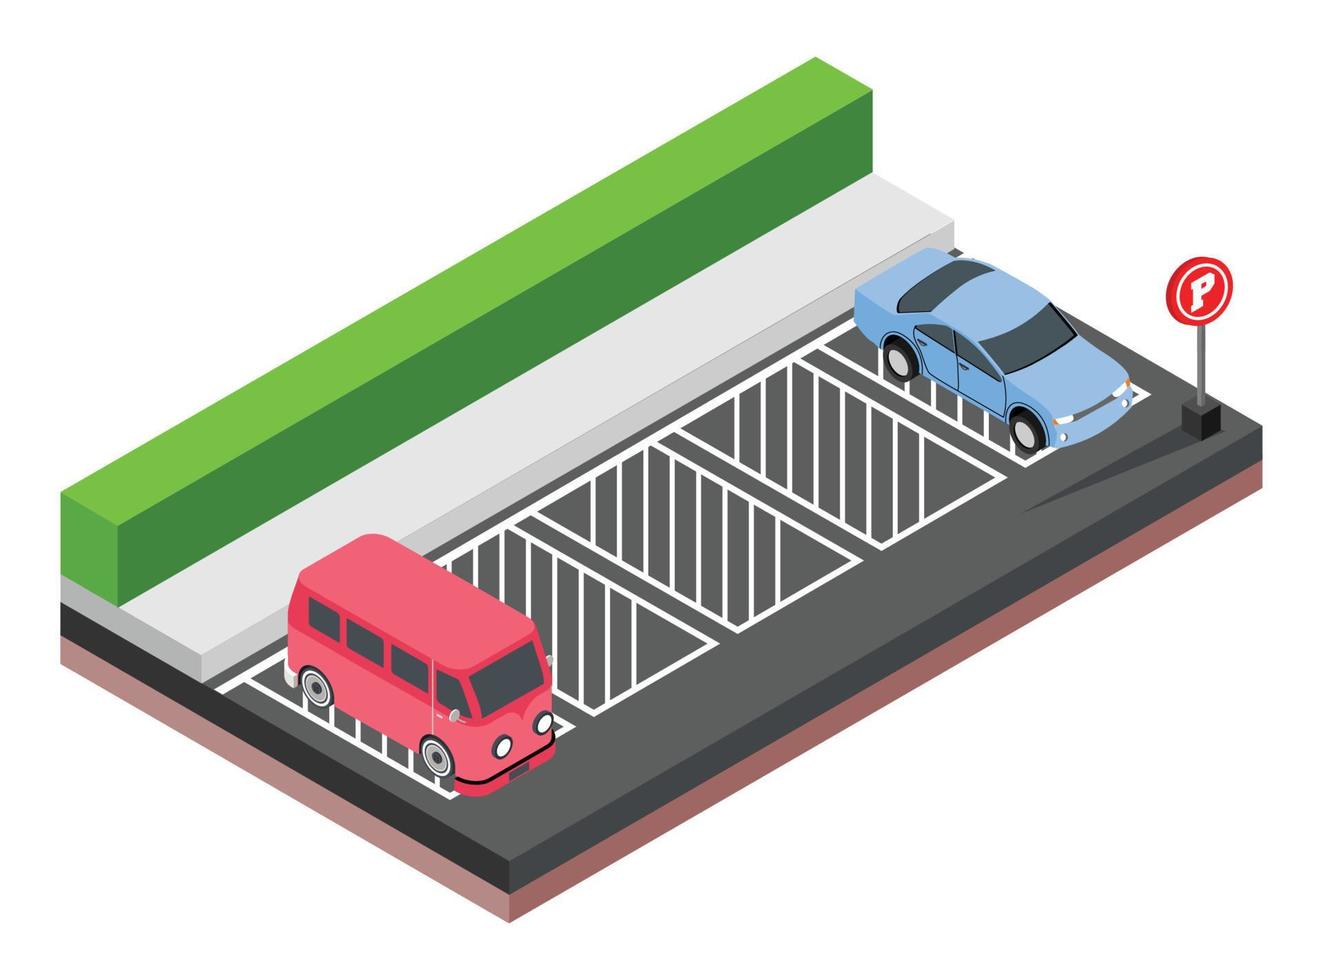 illustration vectorielle isométrique d'une voiture dans un parking. adapté aux diagrammes, infographies et autres ressources graphiques vecteur